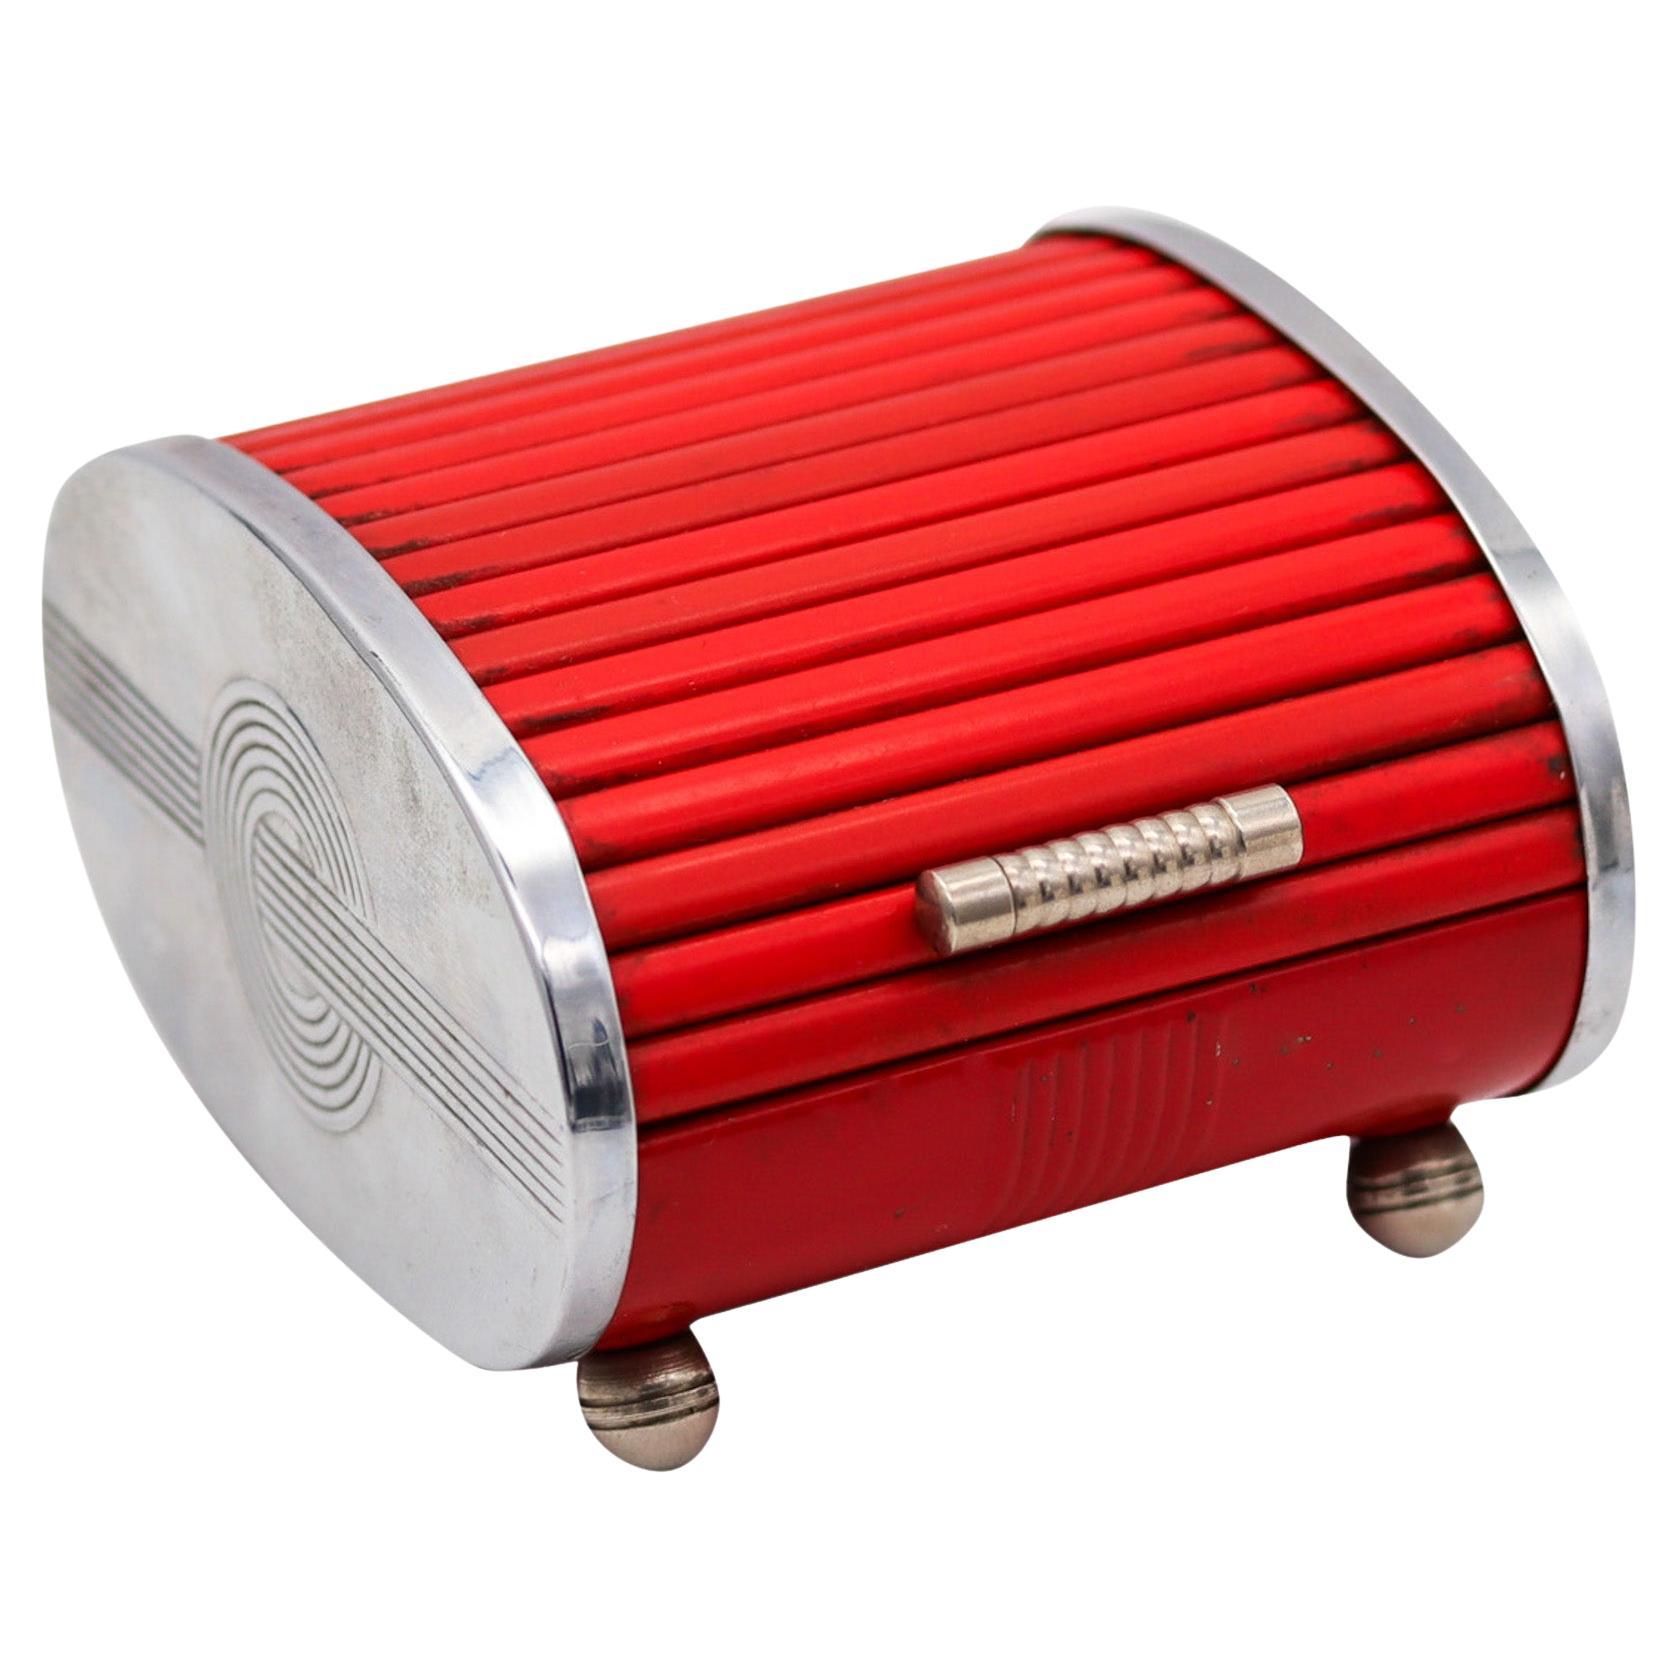 Park Sherman 1930 Art Deco Chromed Steel Roller Lid Box With Red Bakelite